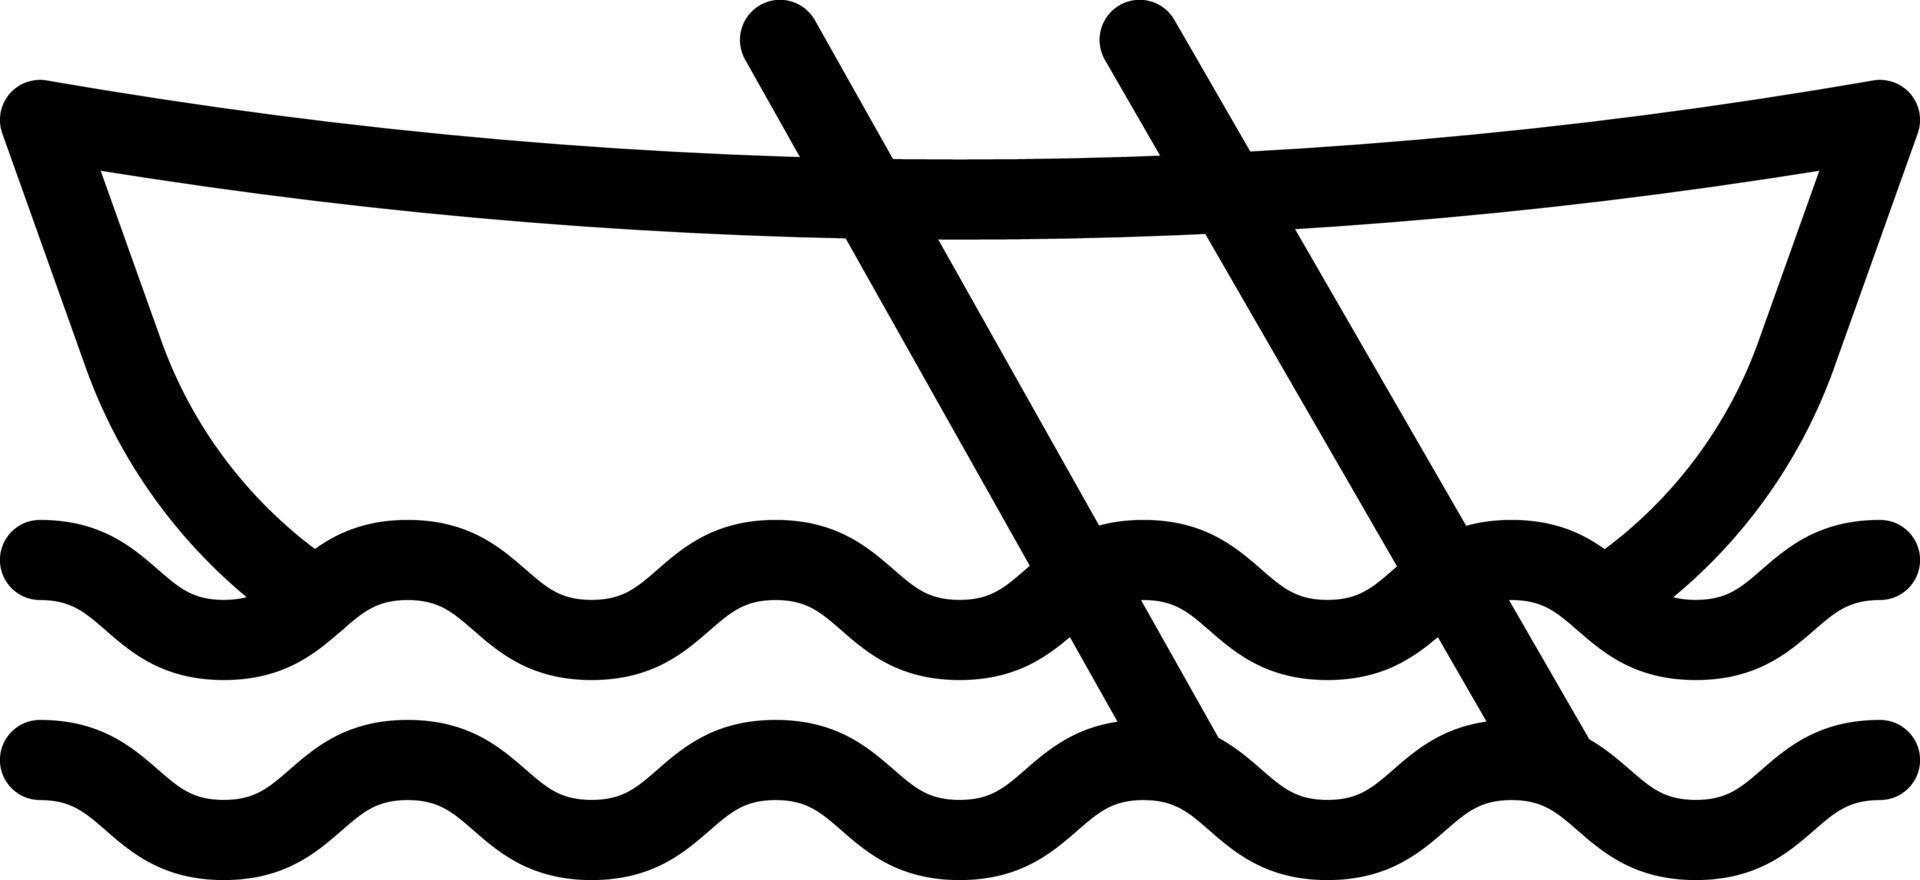 illustrazione vettoriale della barca su uno sfondo simboli di qualità premium. icone vettoriali per il concetto e la progettazione grafica.